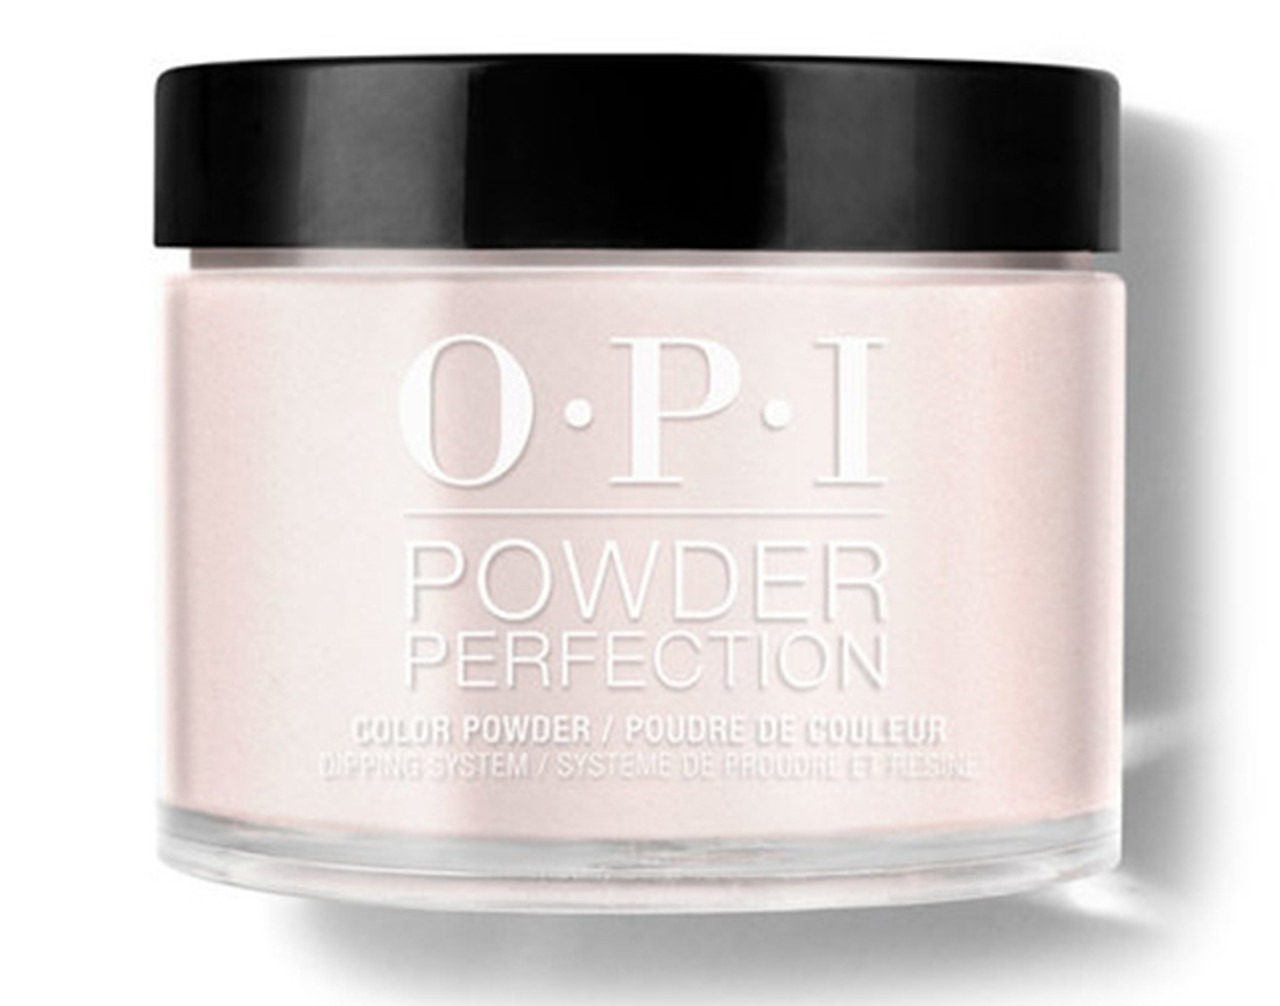 OPI Dipping Powder Perfection Humidi-Tea - 1.5 oz / 43 G